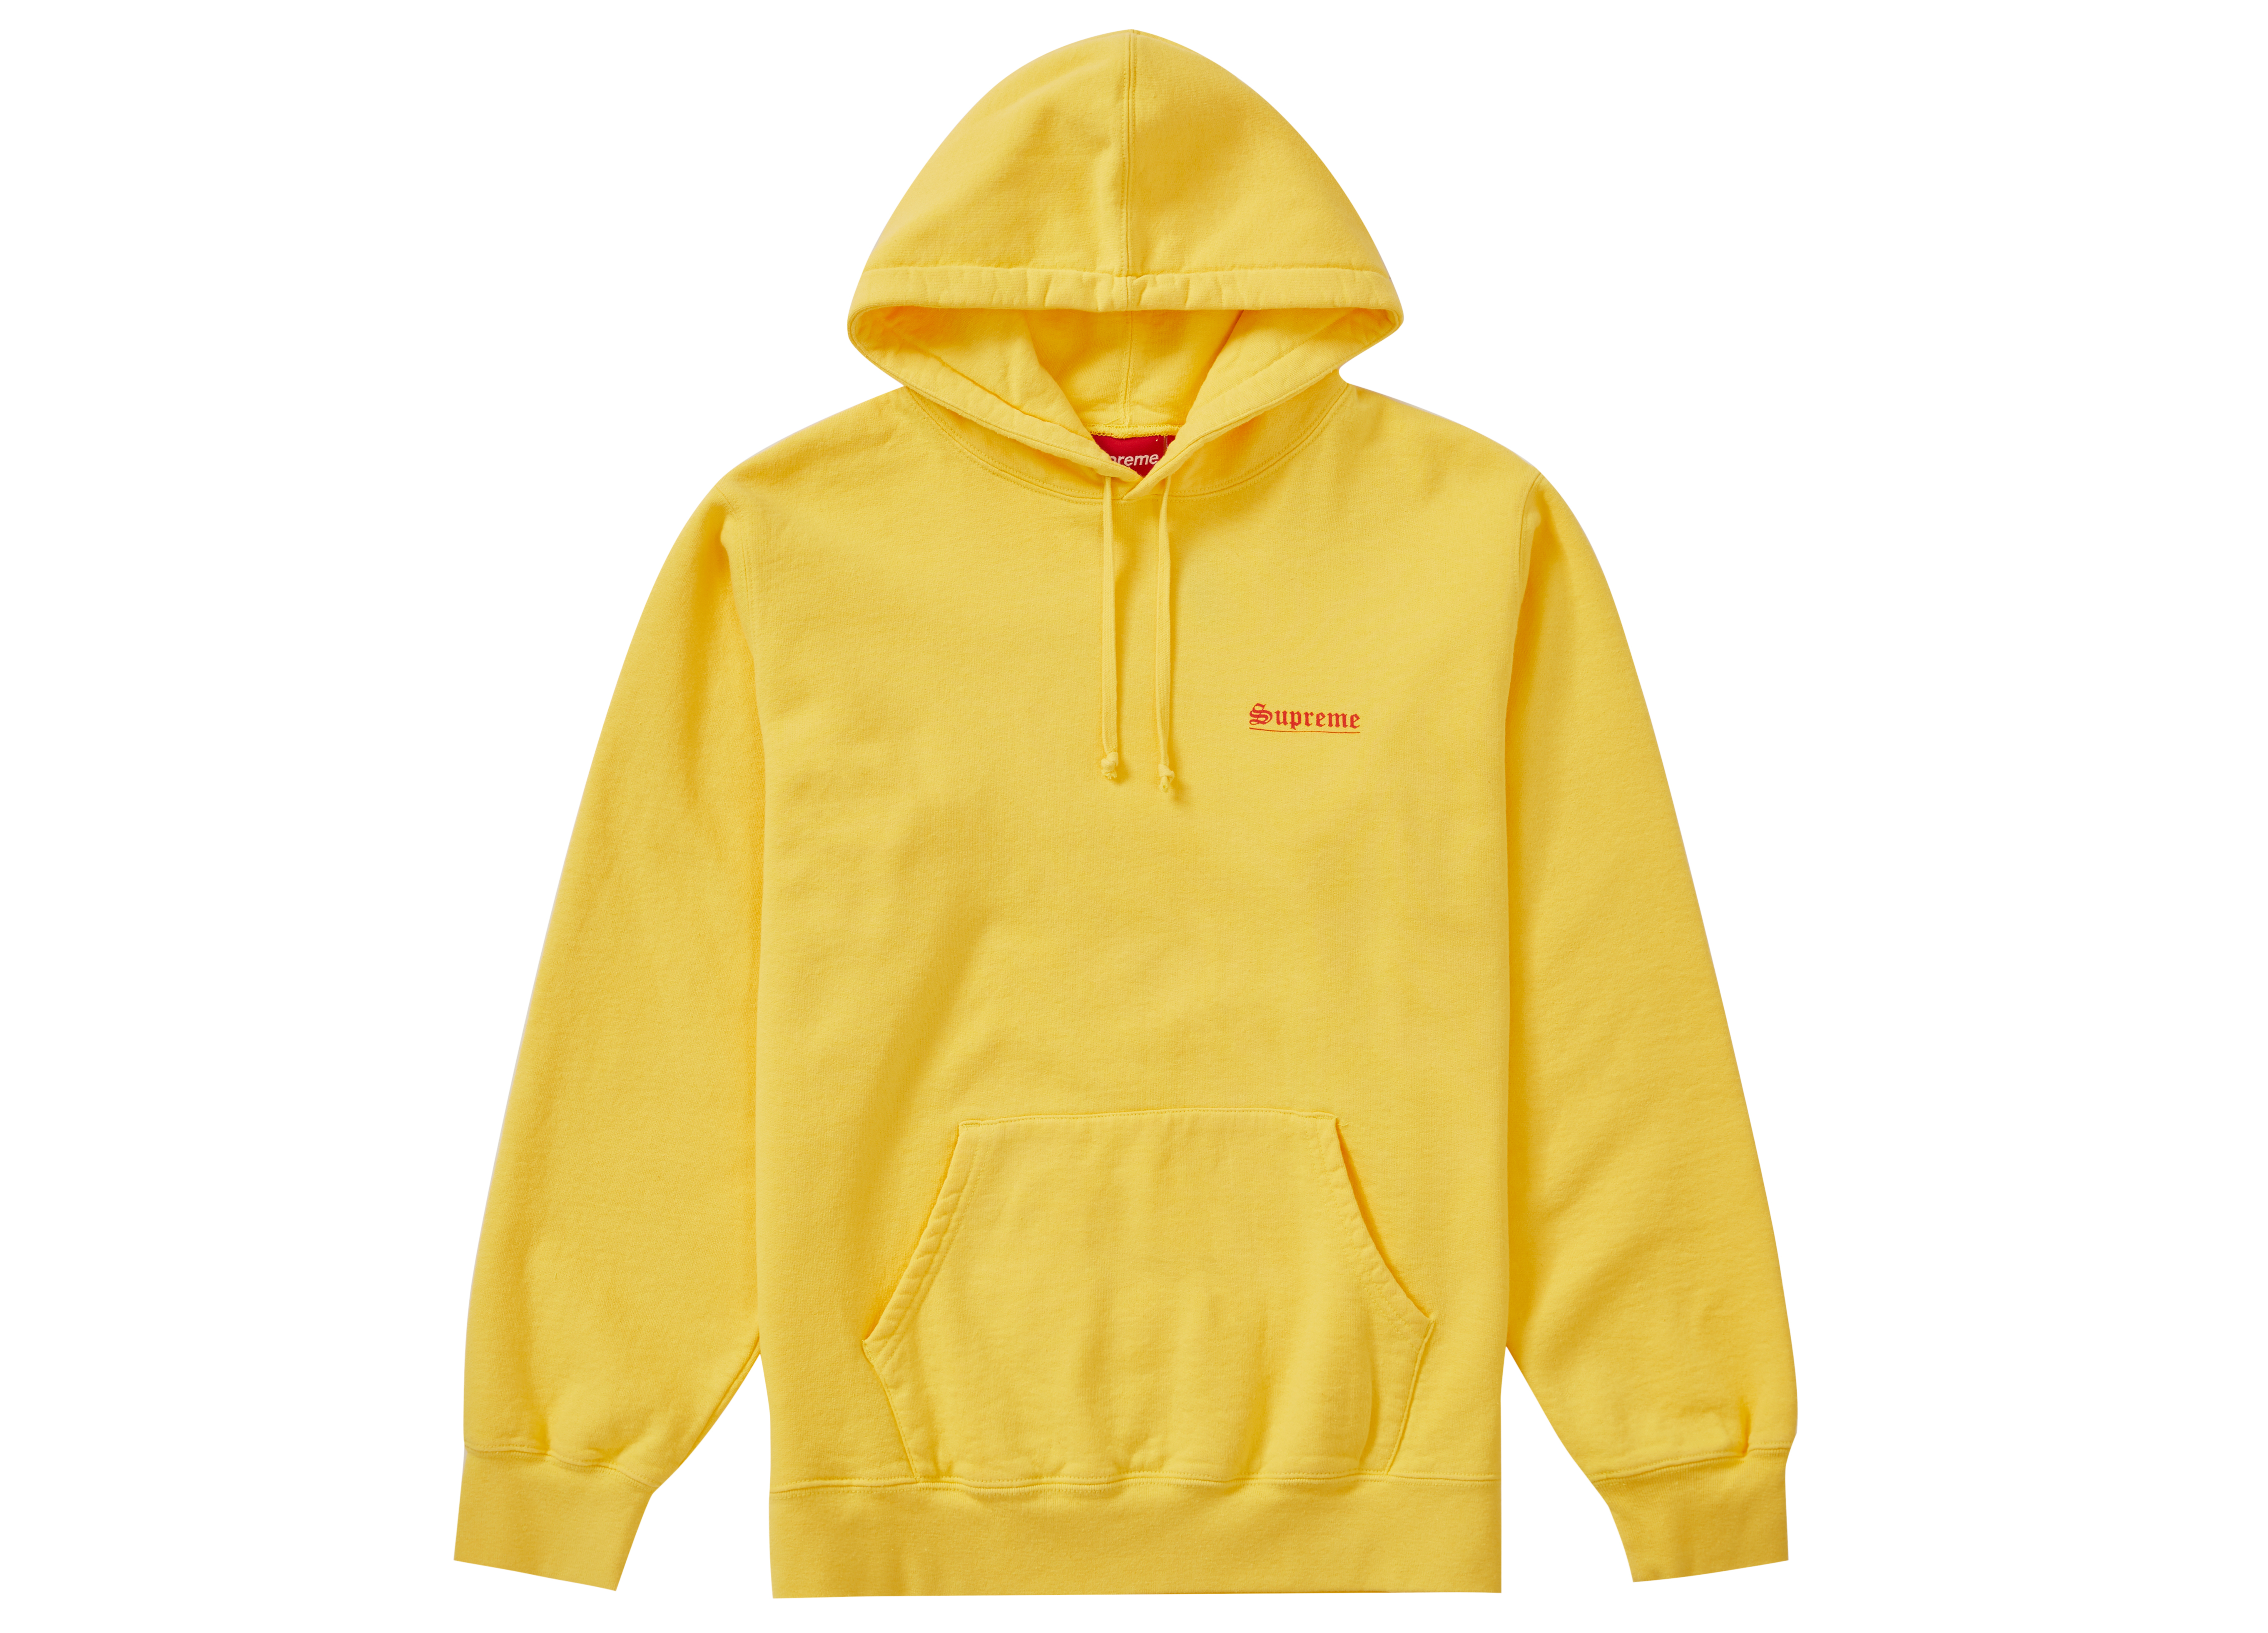 Supreme Mary Hooded Sweatshirt Yellow - Novelship